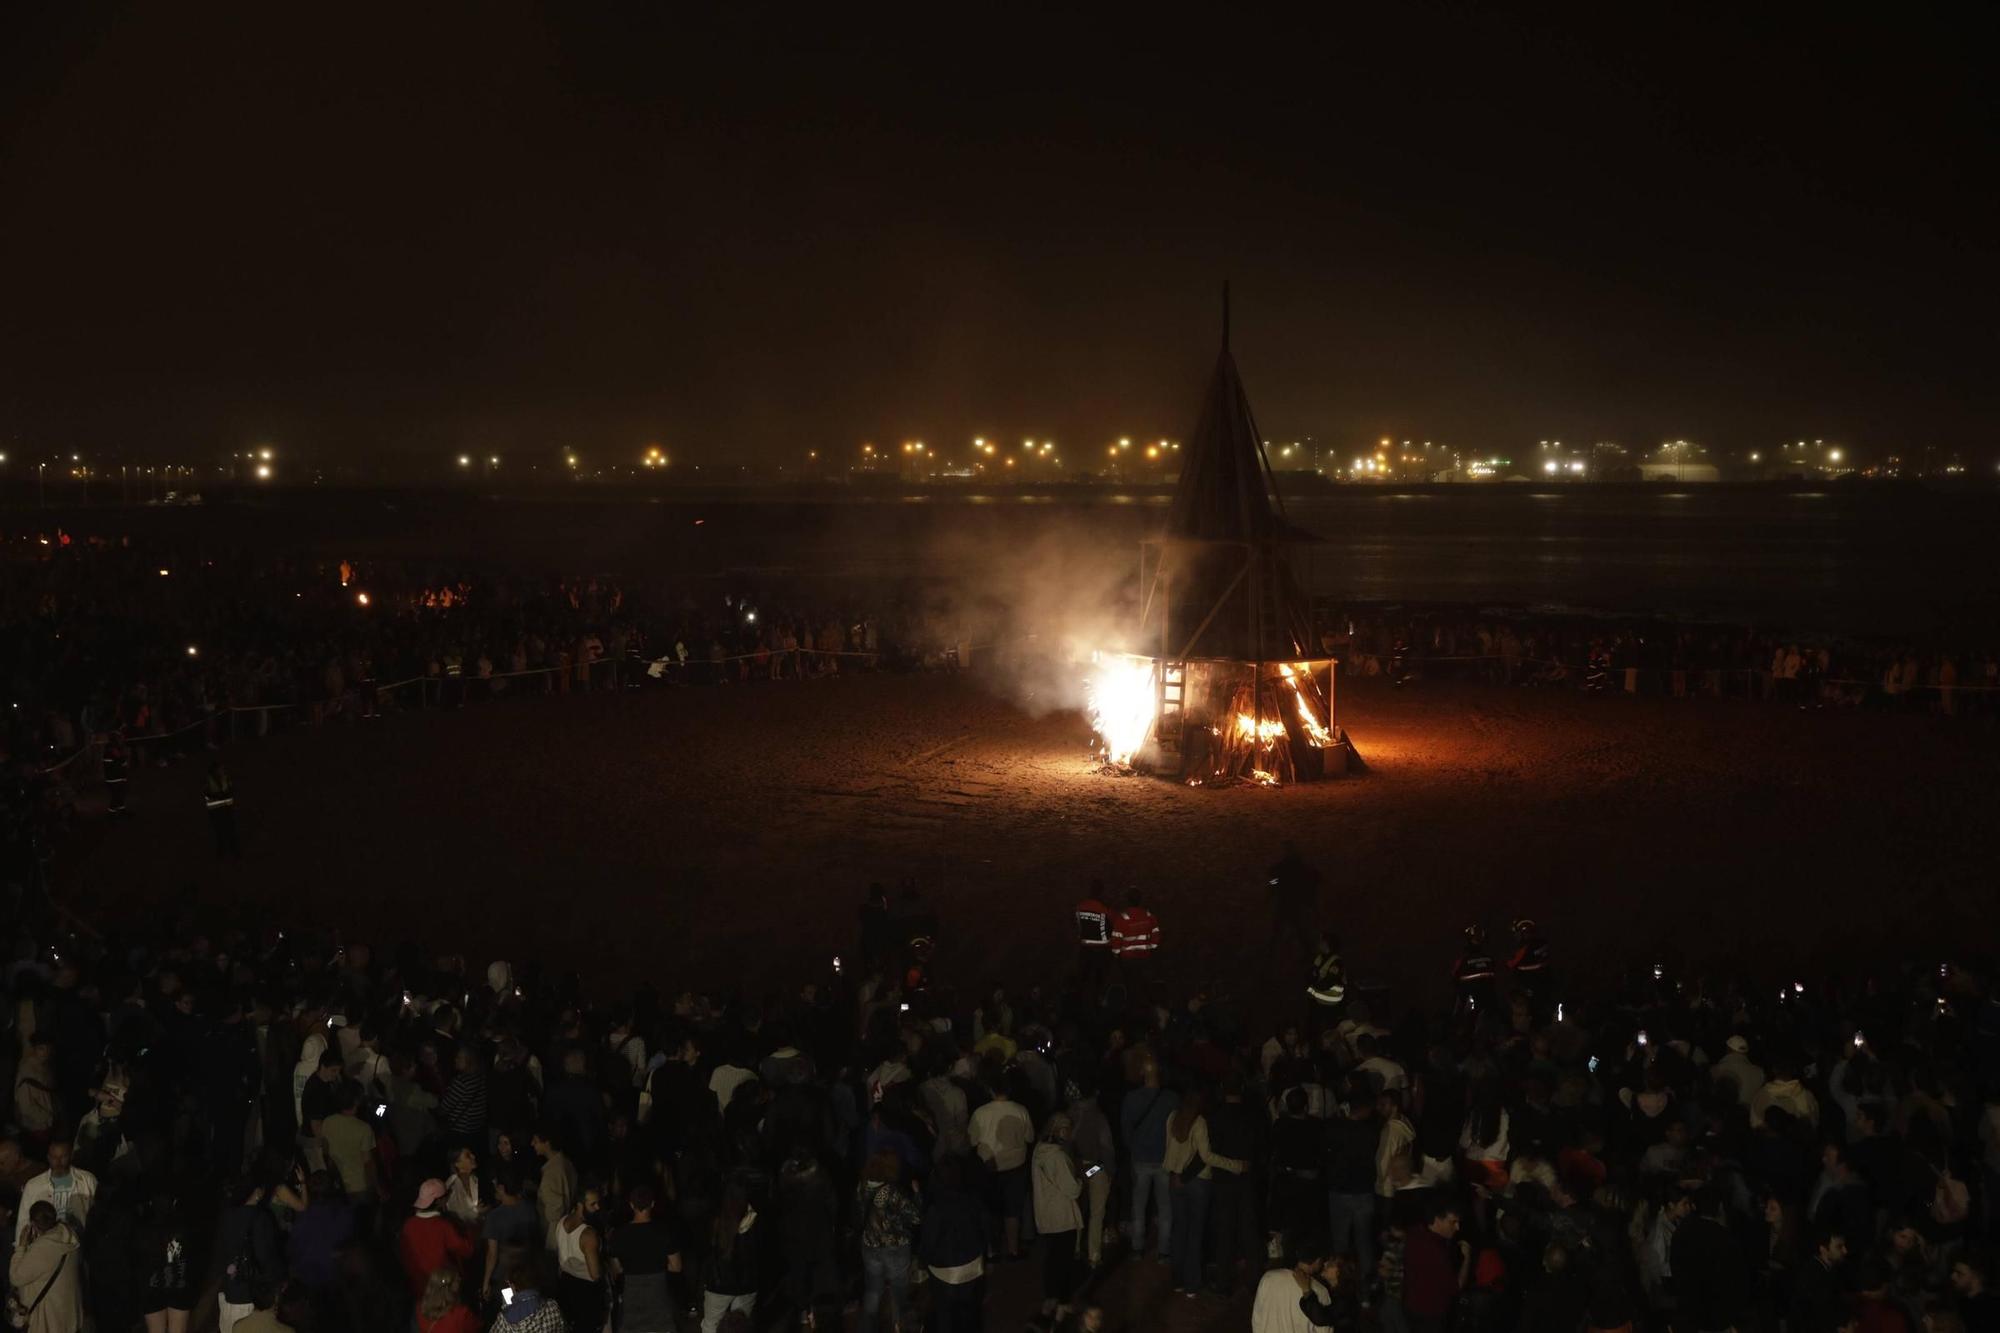 Así fue el encendido de la Hoguera de San Juan en Gijón (en imágenes)